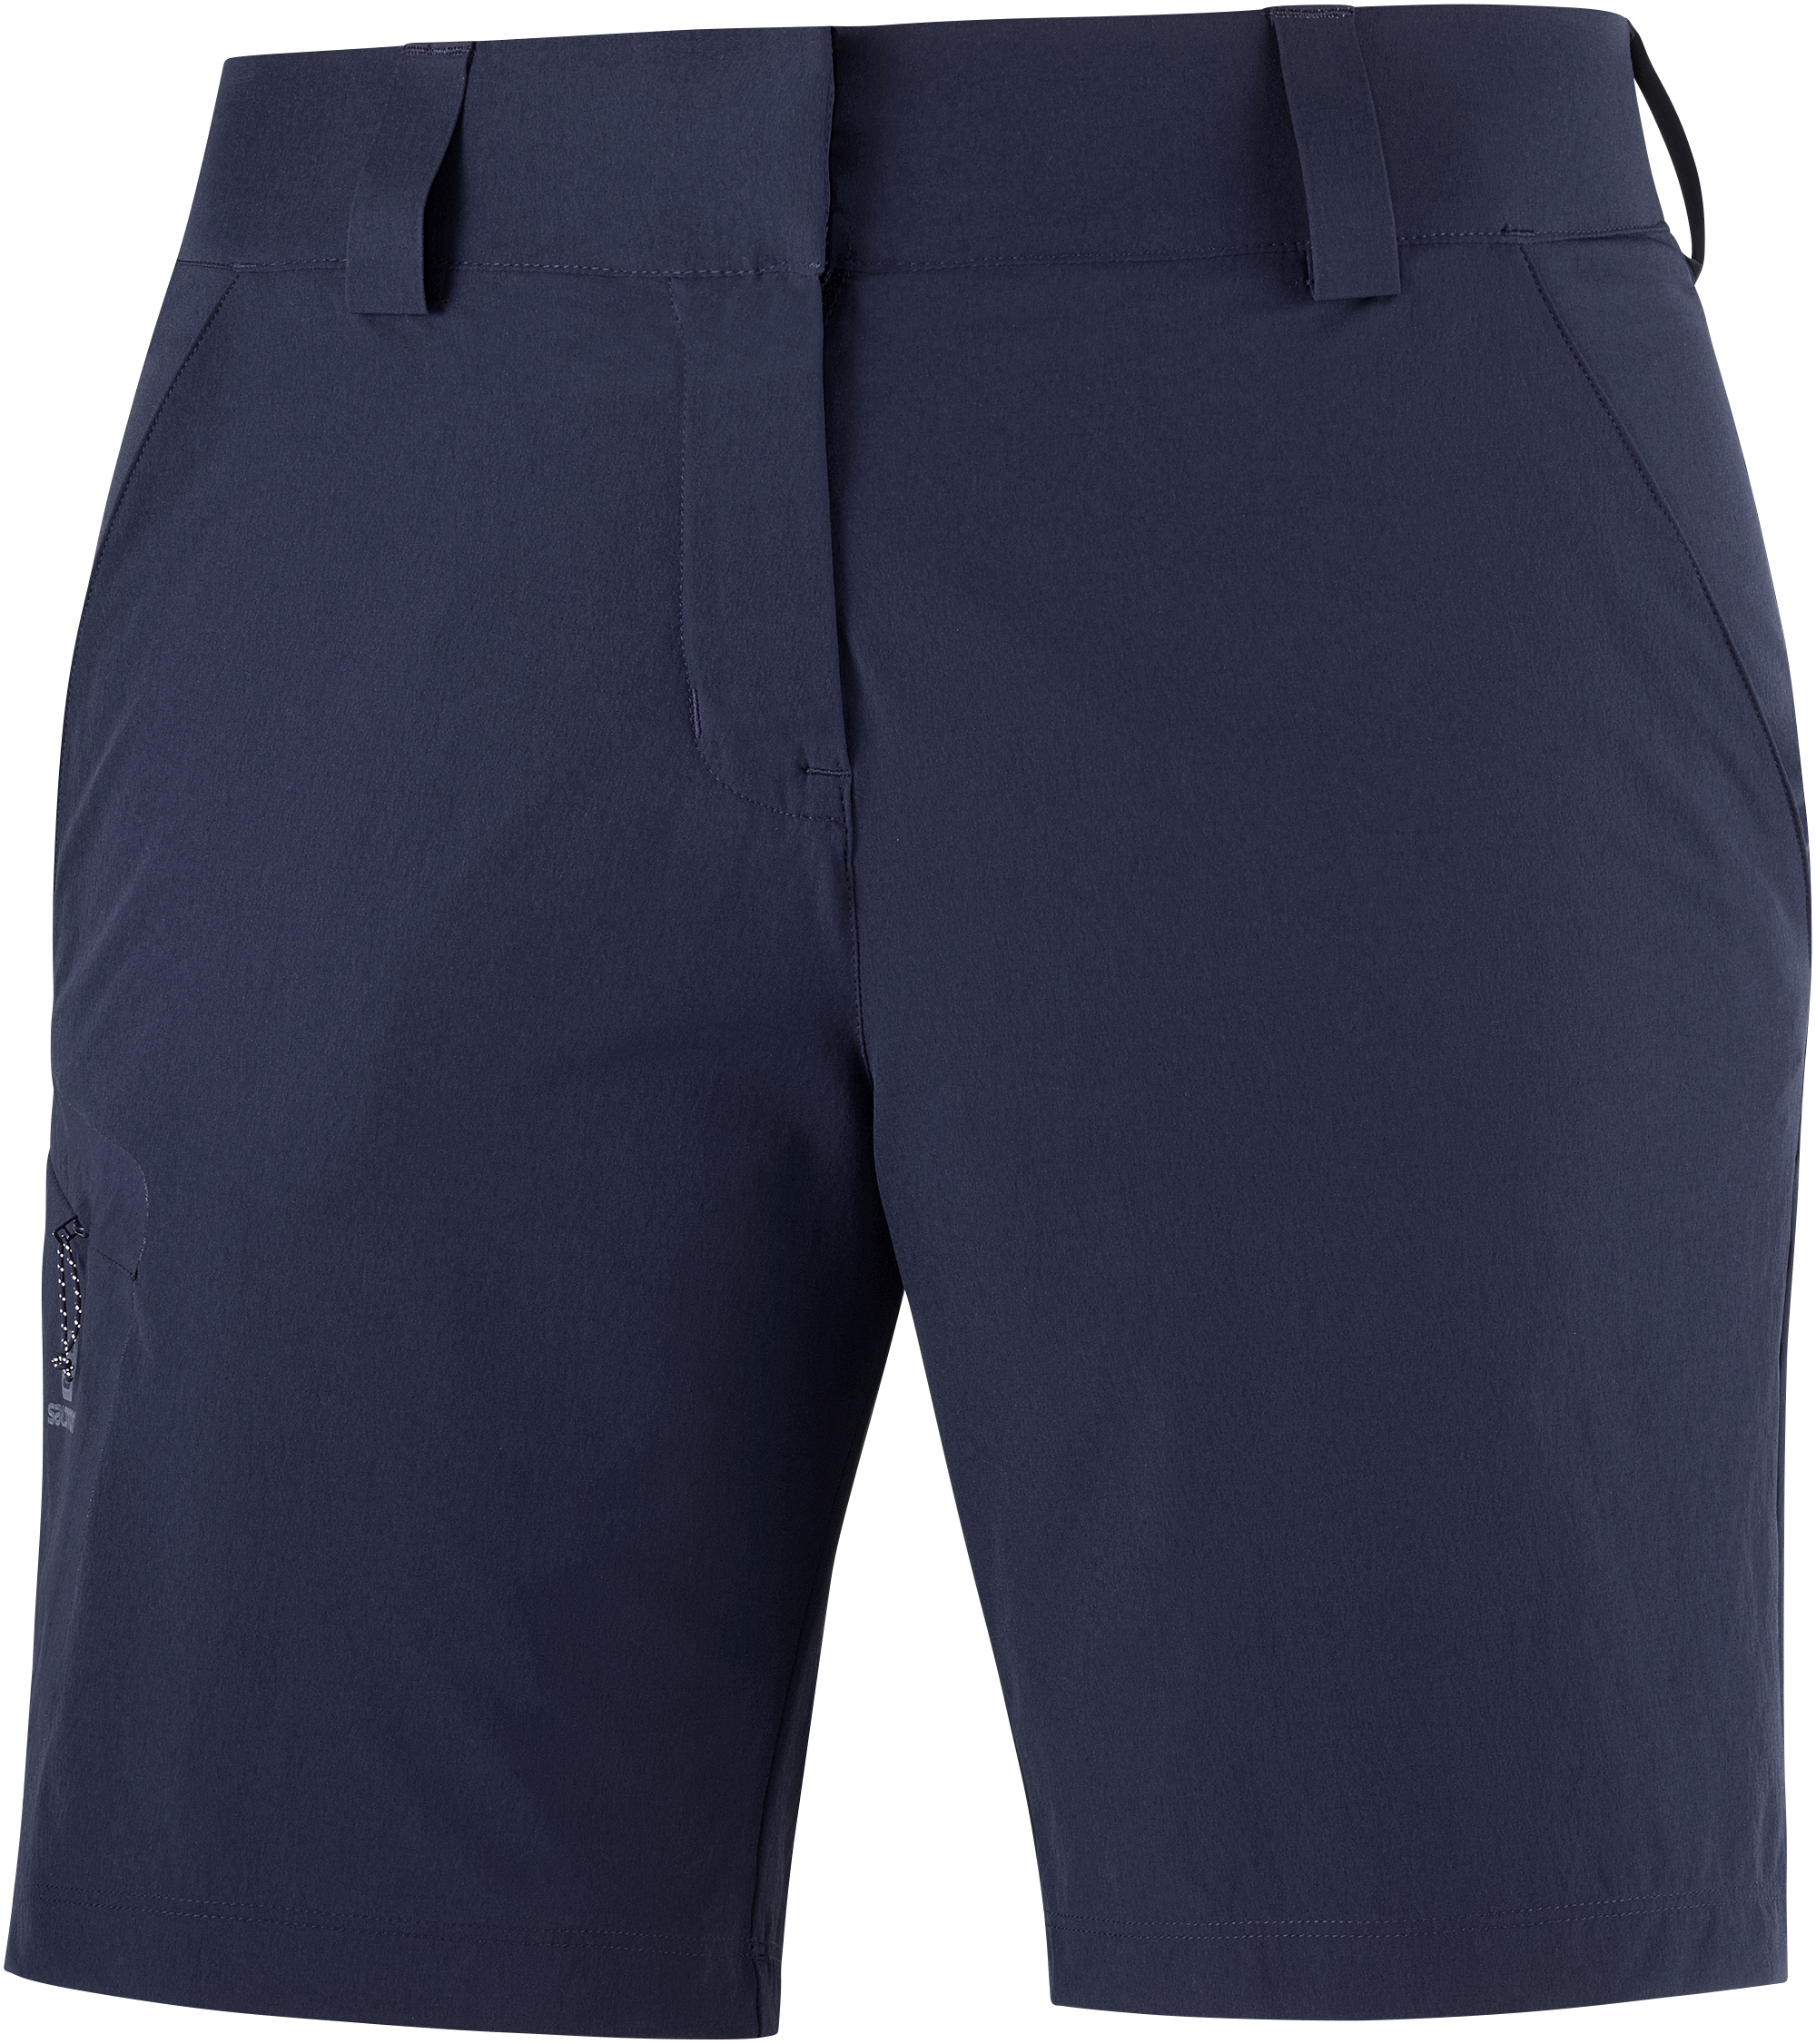 Повседневные шорты женские Salomon Wayfarer Shorts W синие 34